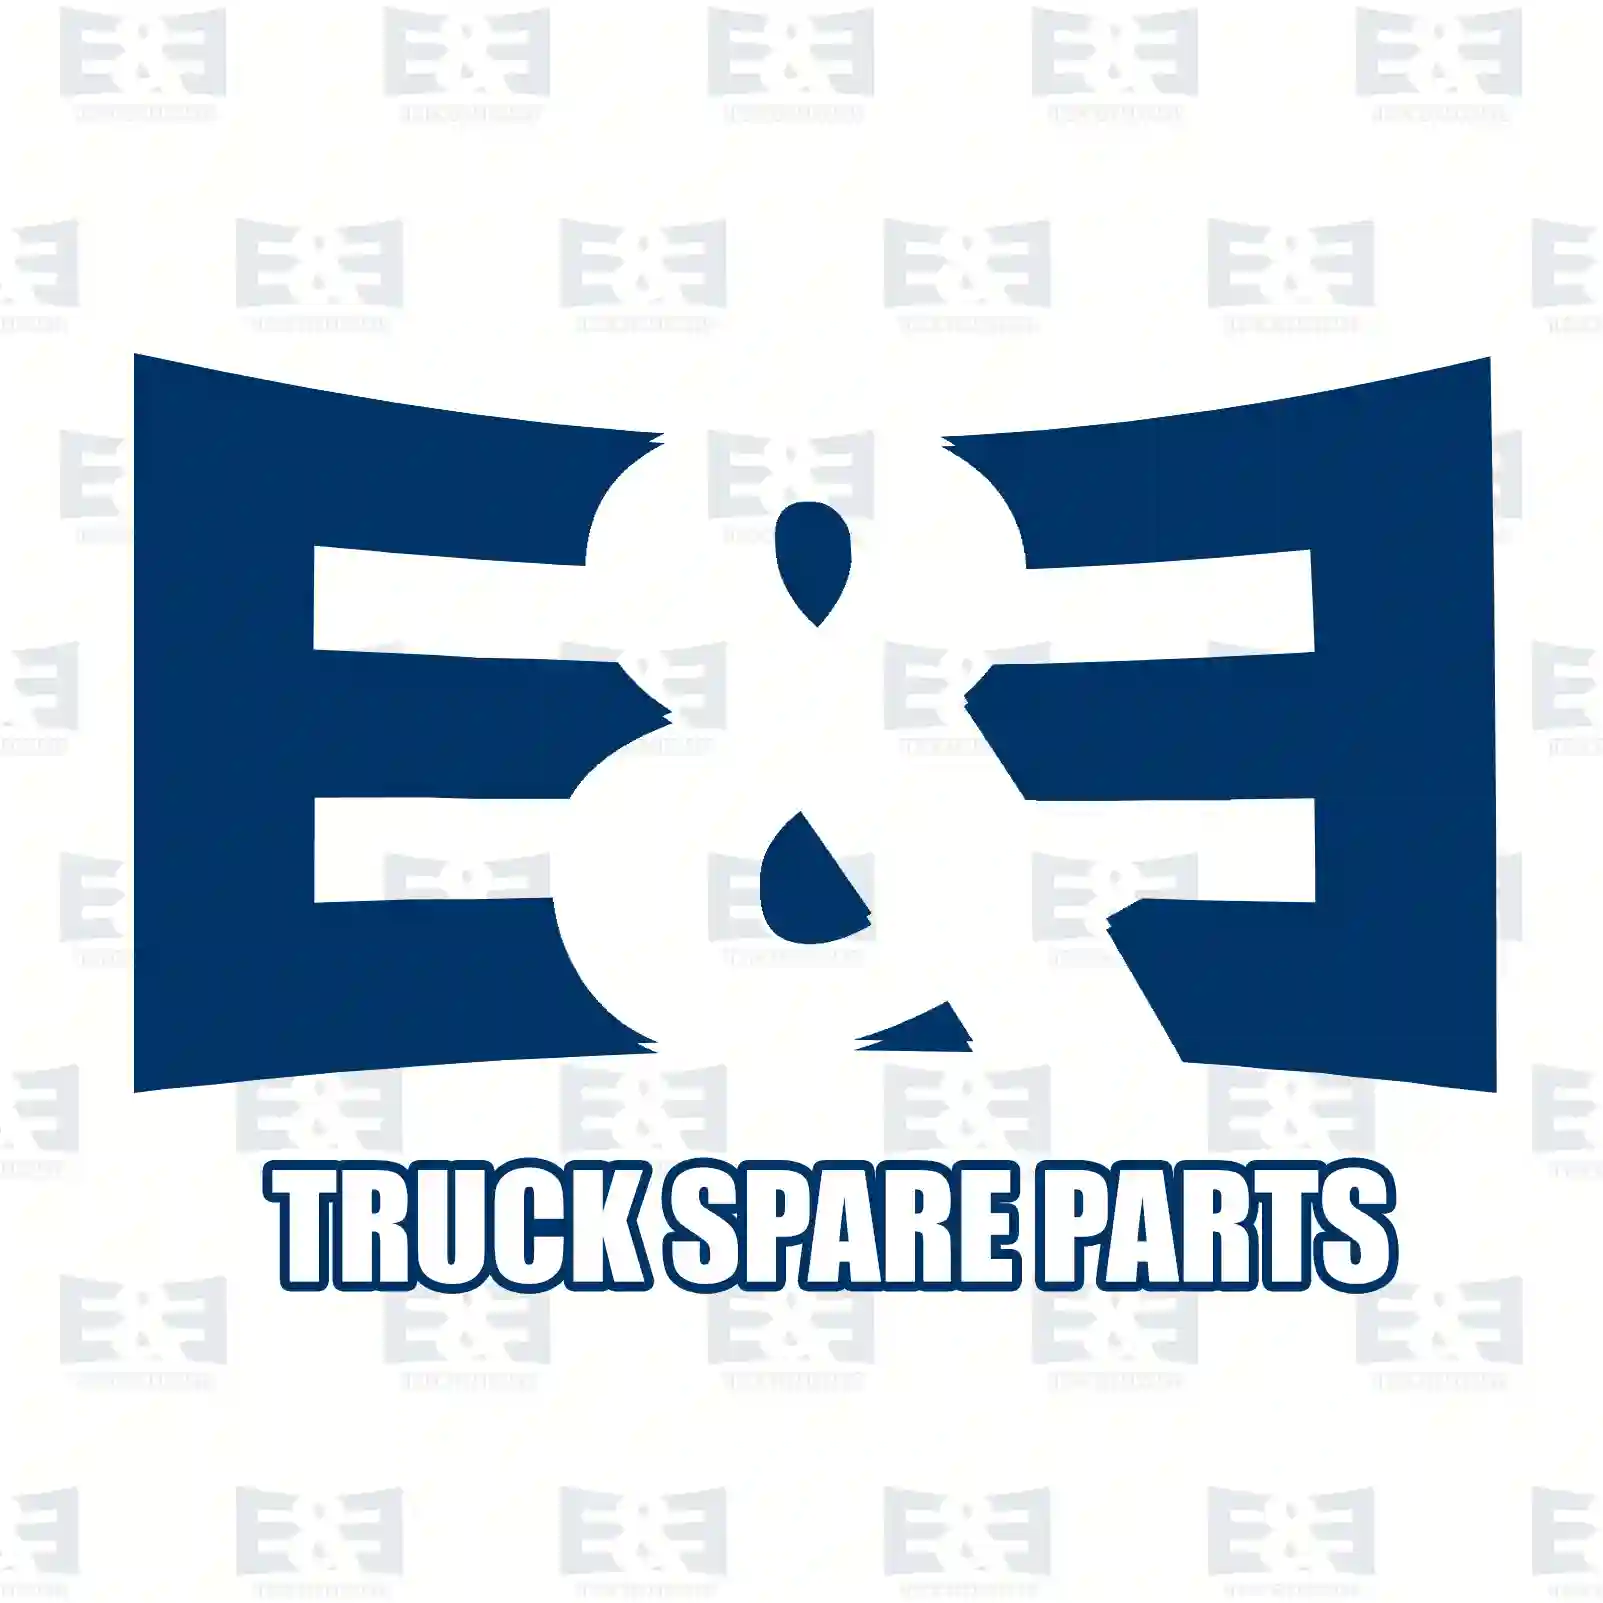 Brake drum, 2E2293960, 42532029, , , , , , ||  2E2293960 E&E Truck Spare Parts | Truck Spare Parts, Auotomotive Spare Parts Brake drum, 2E2293960, 42532029, , , , , , ||  2E2293960 E&E Truck Spare Parts | Truck Spare Parts, Auotomotive Spare Parts